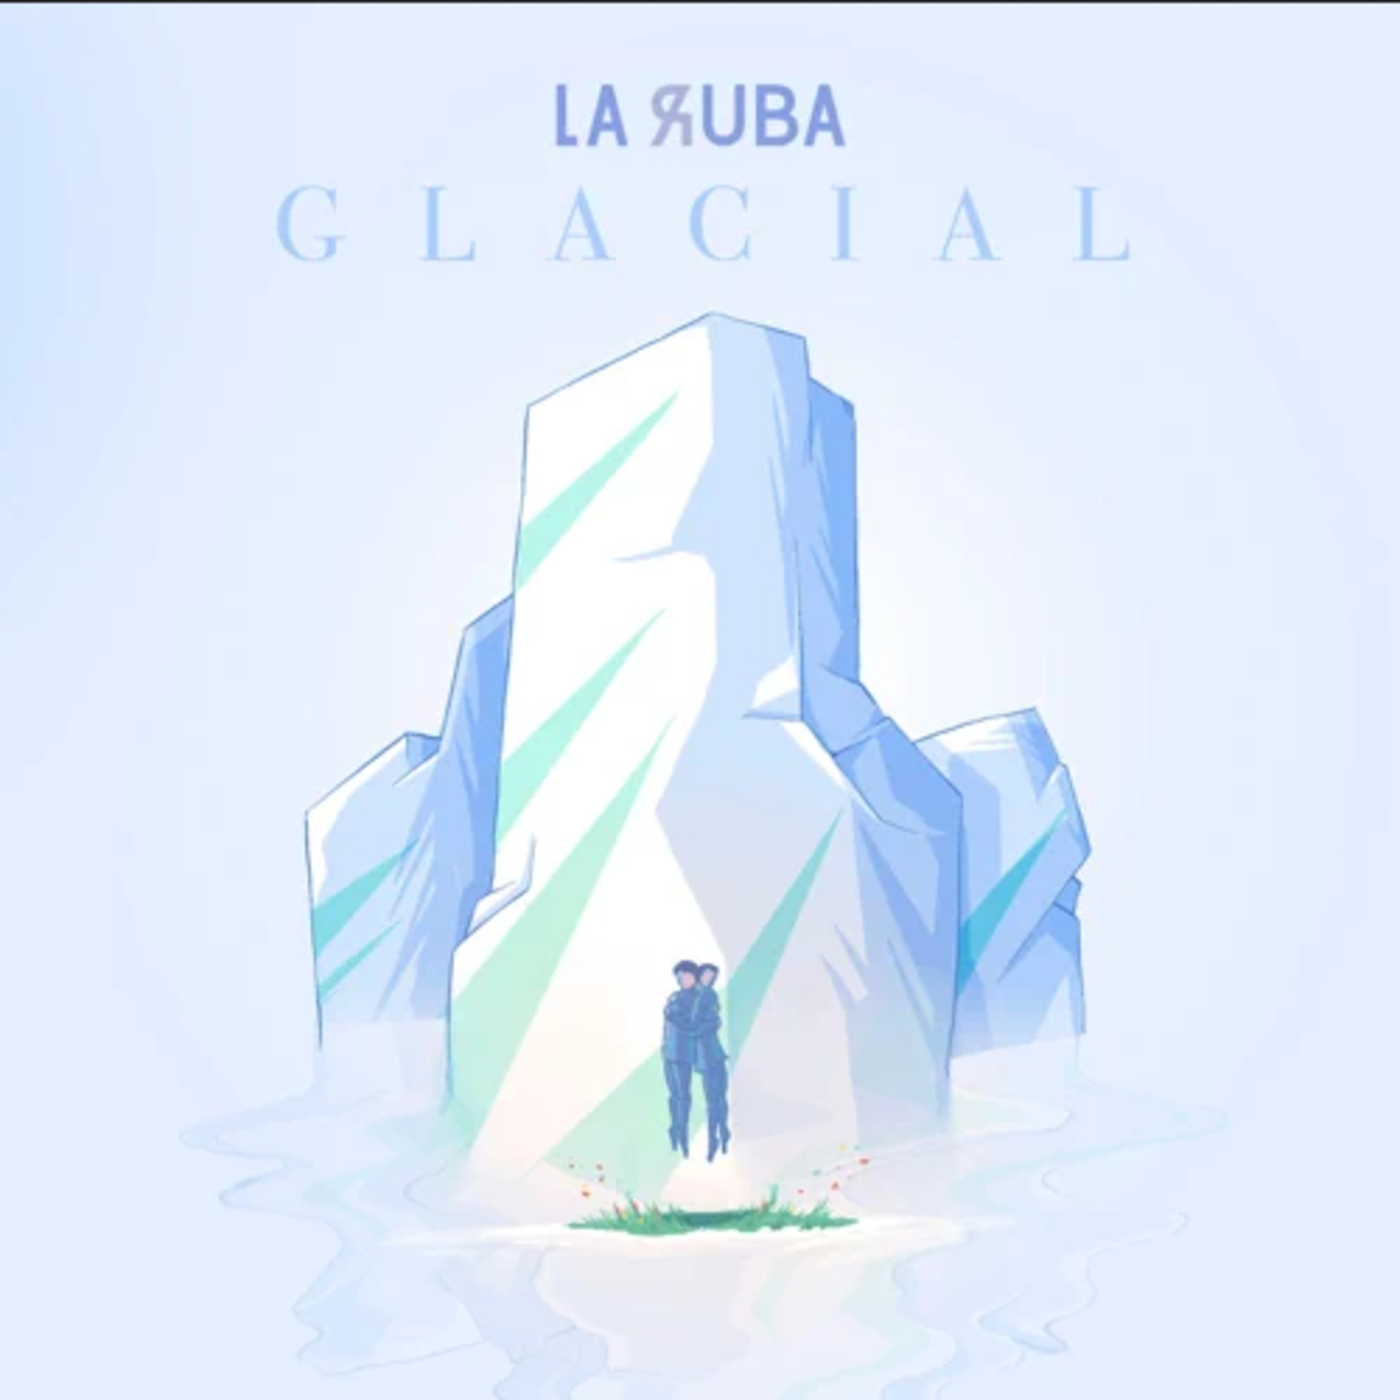 La Ruba - Glacial | musica en valencià